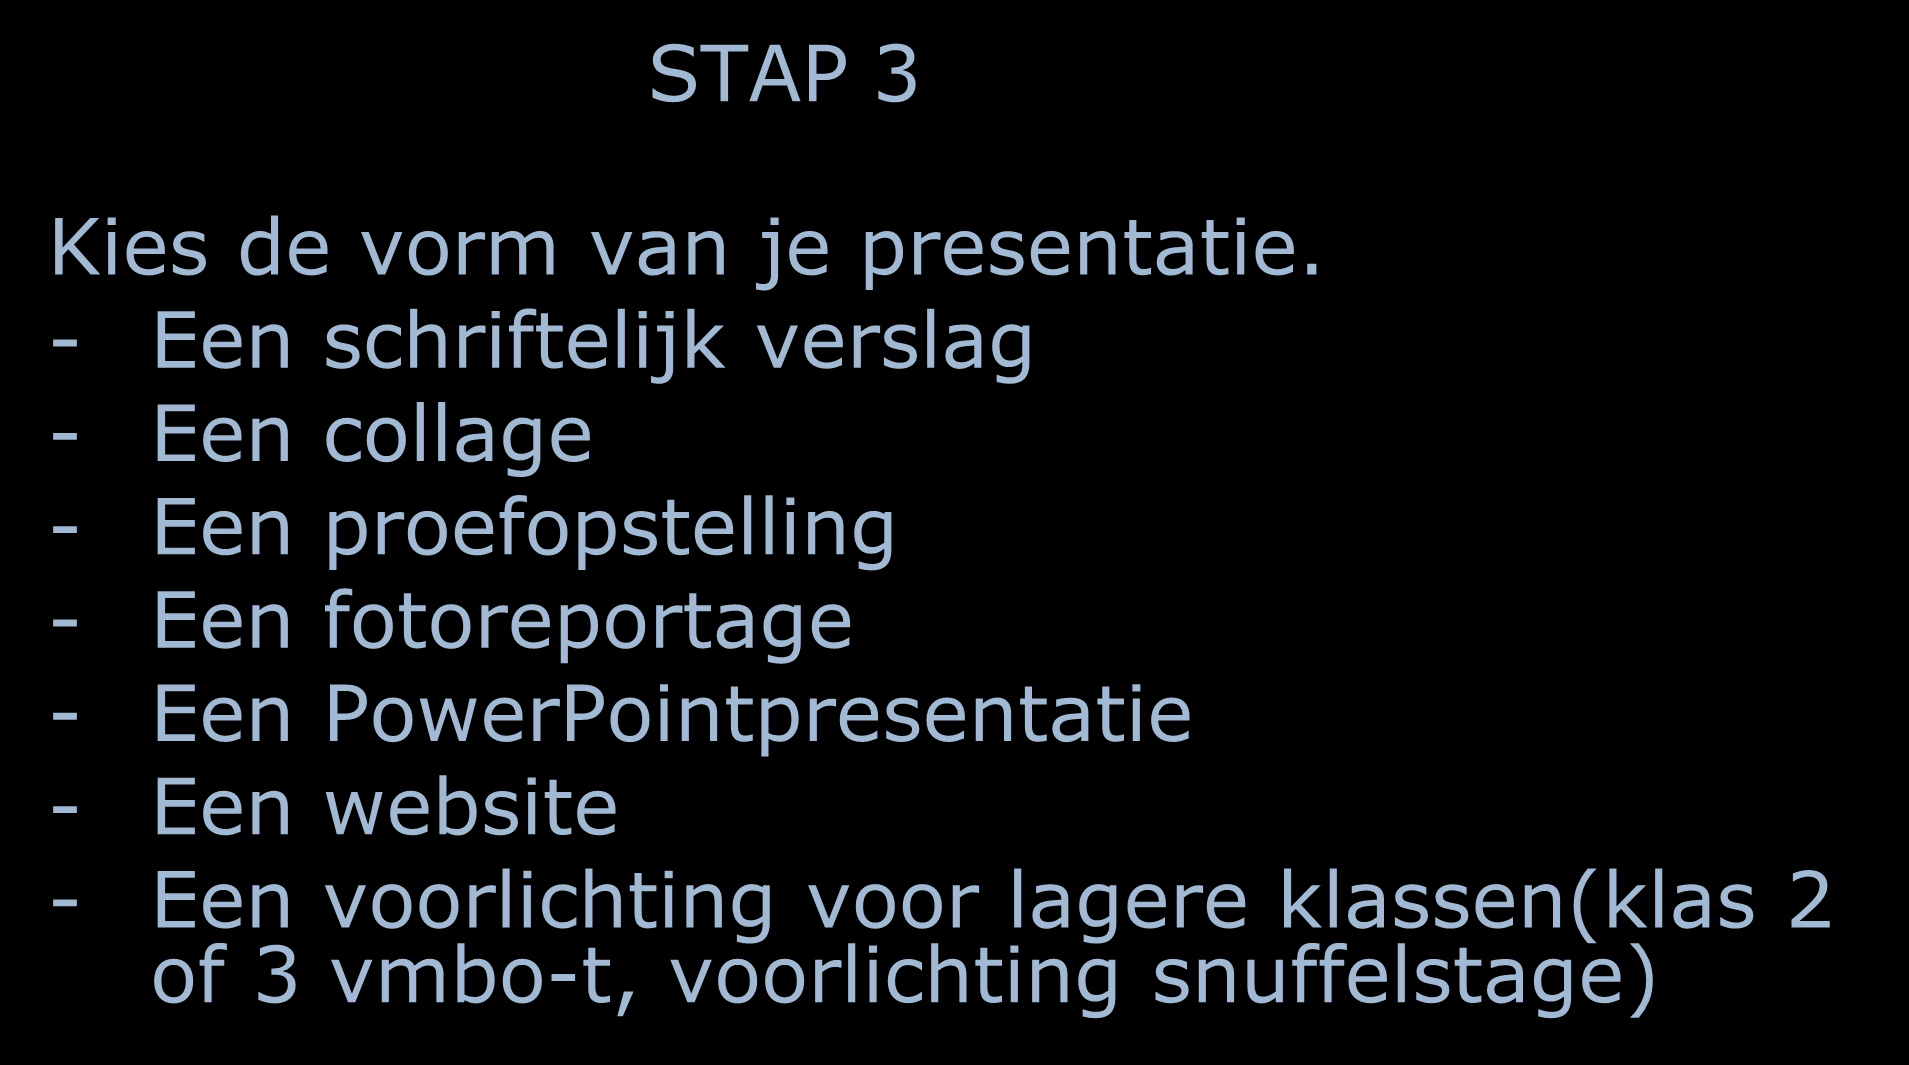 STAP 3 Kies de vorm van je presentatie.